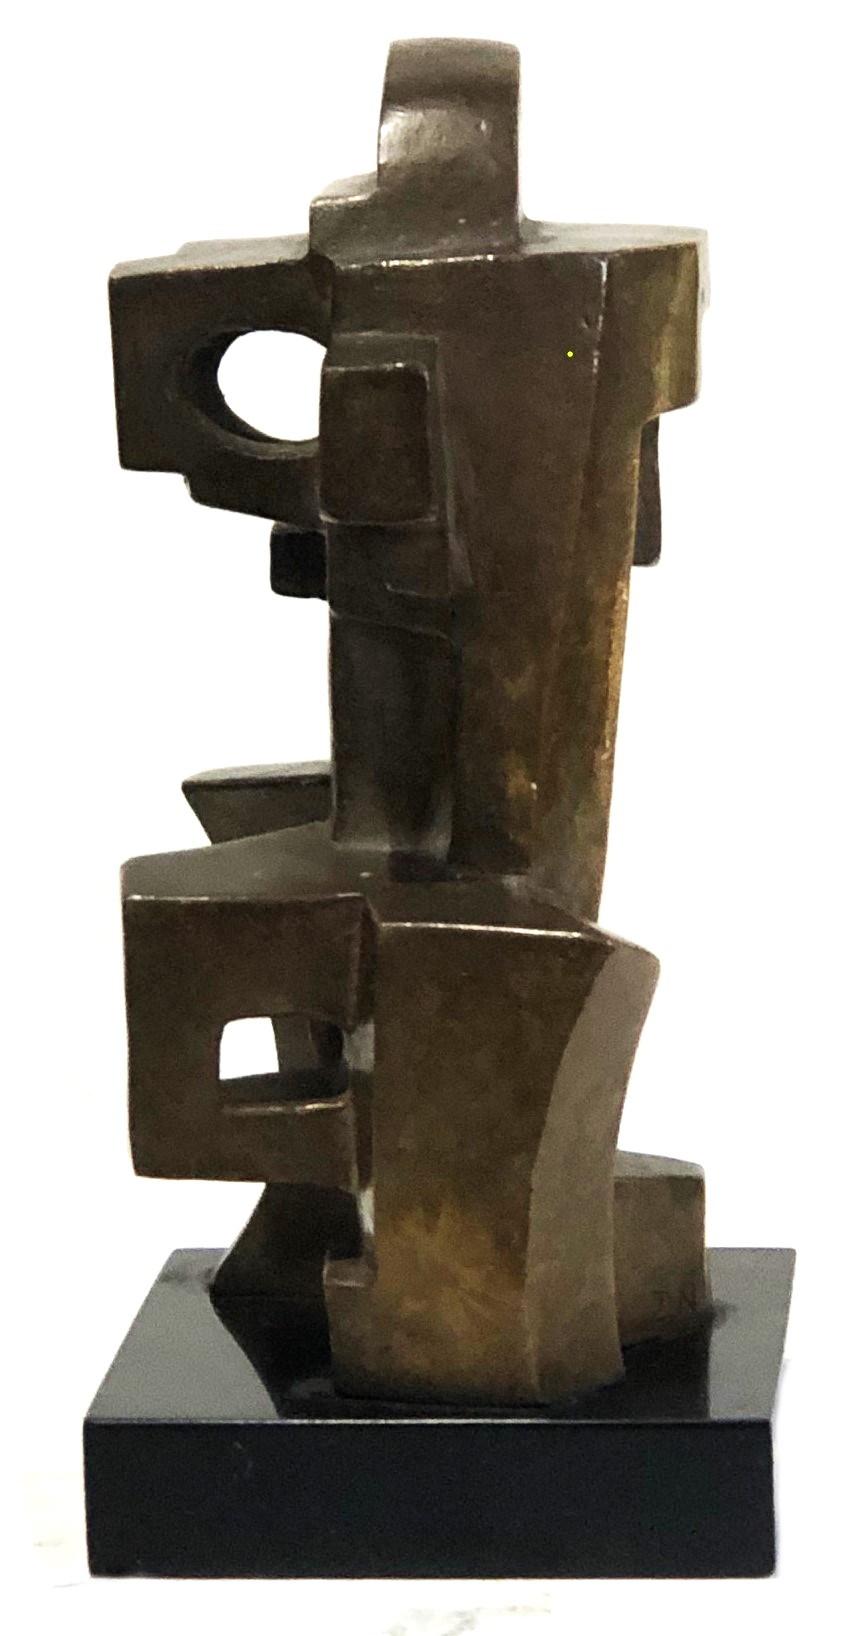 Vintage By
Abstrakte kubistische Skulptur
Bronze  Granit
XX Jahrhundert

ABMESSUNGEN
Höhe: 7 Zoll            Breite: 3-3/8 Zoll                  Tiefe: 3-3/8 Zoll

ÜBER
Dies ist ein brillantes Beispiel für eine kubistische Skulptur, das die Meinung